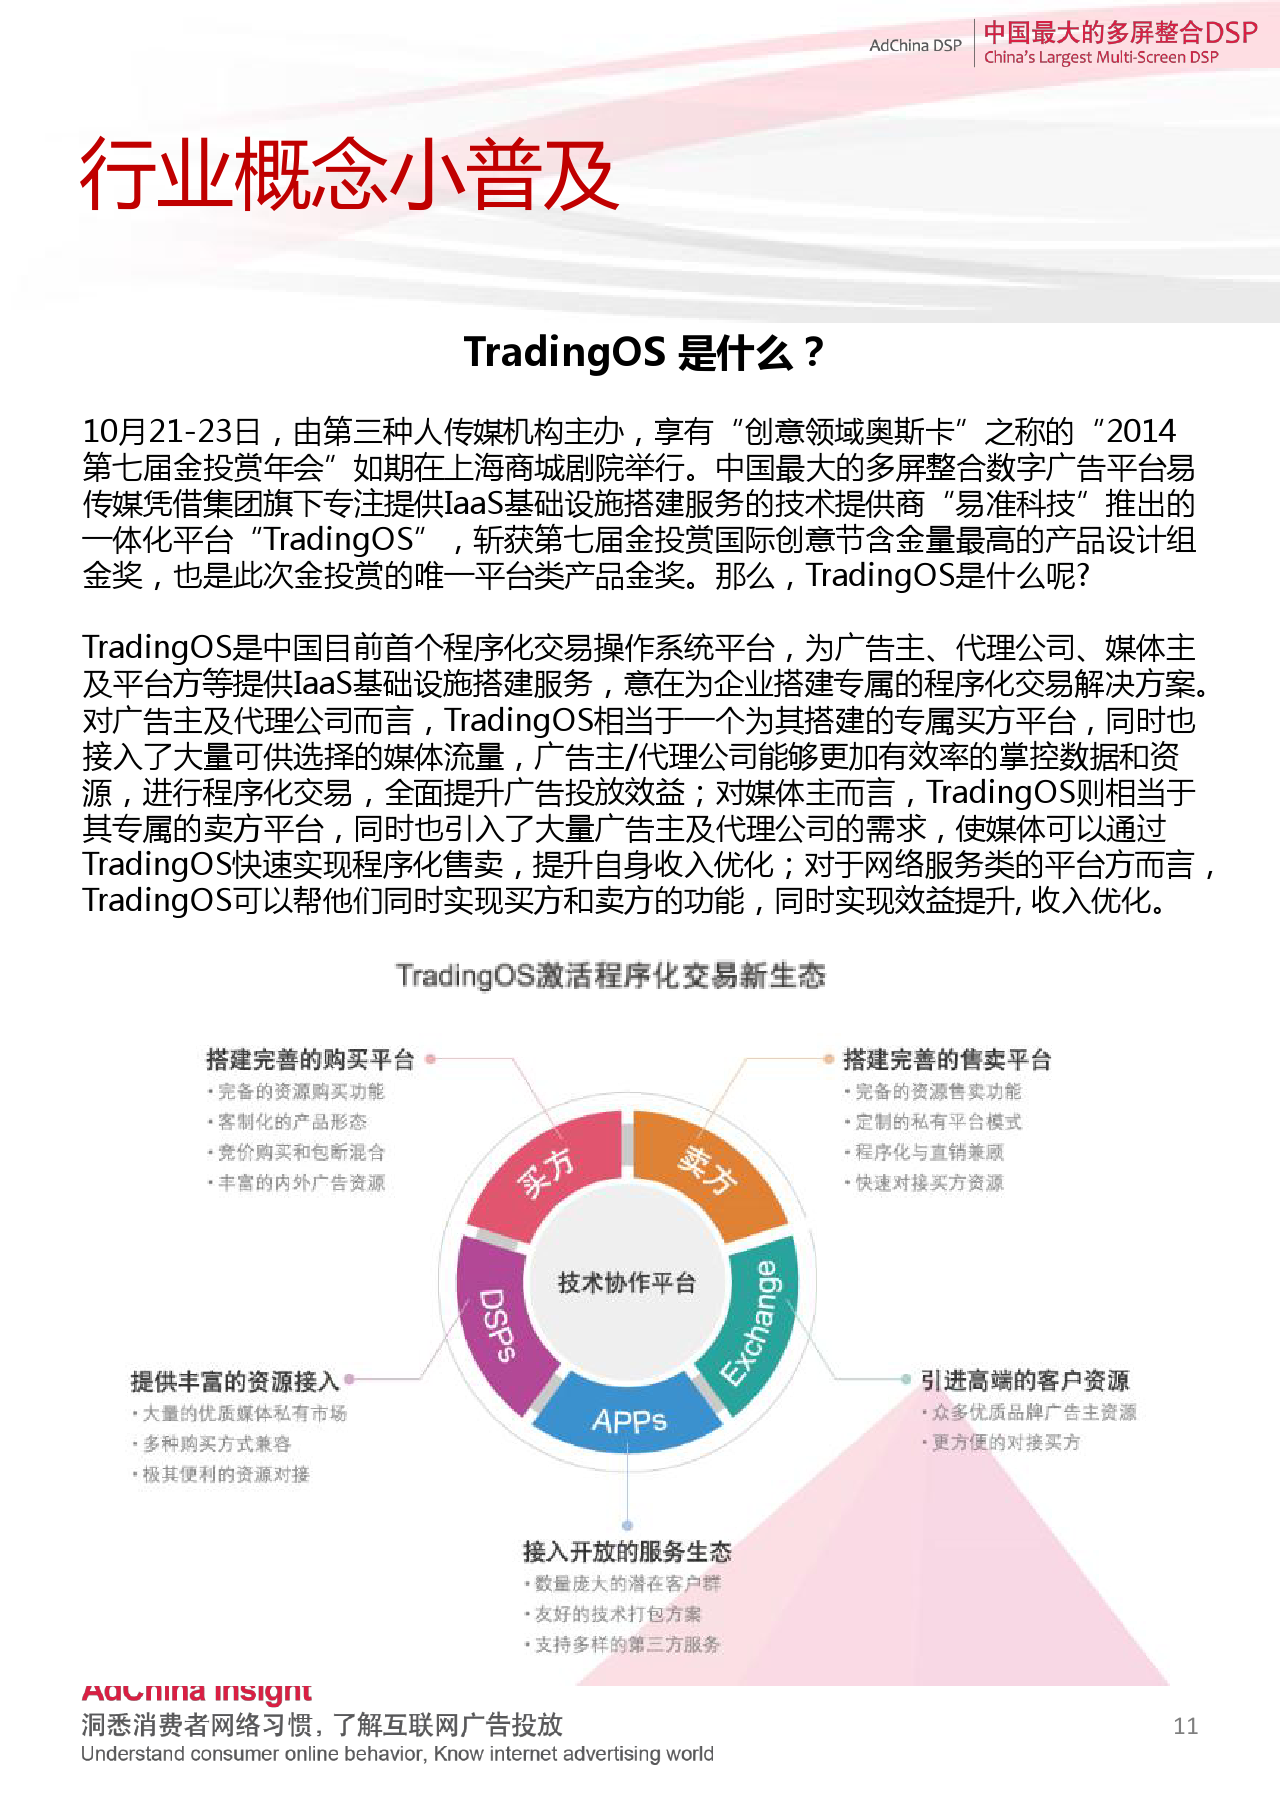 中国DSP行业跨屏数据盘点  9月份_000011